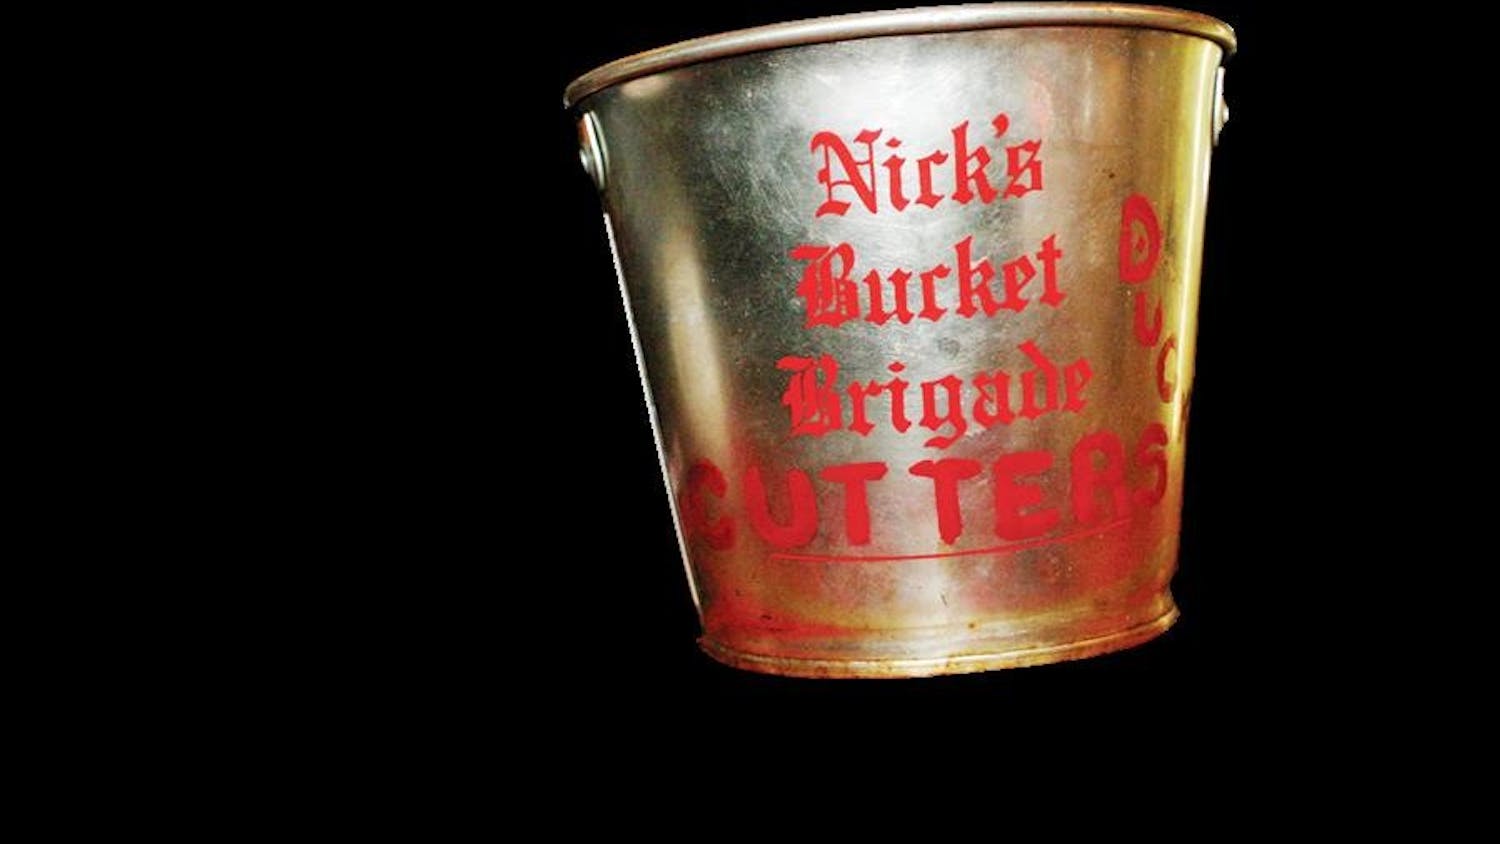 Nick's Bucket